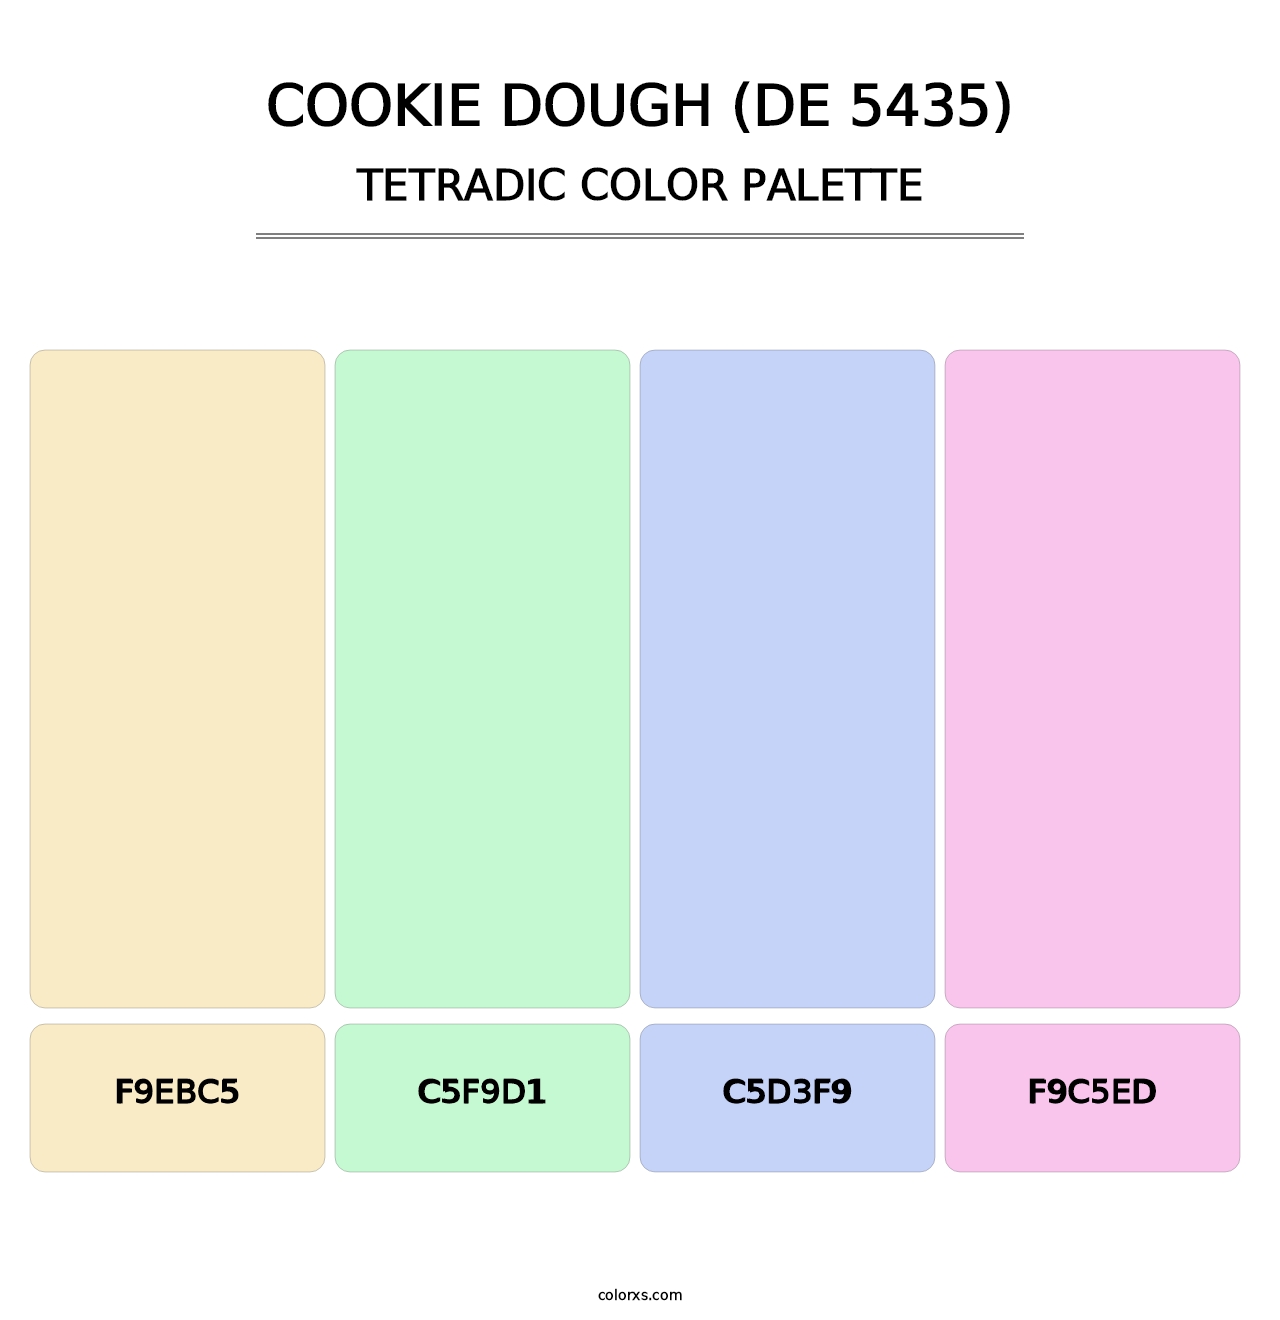 Cookie Dough (DE 5435) - Tetradic Color Palette